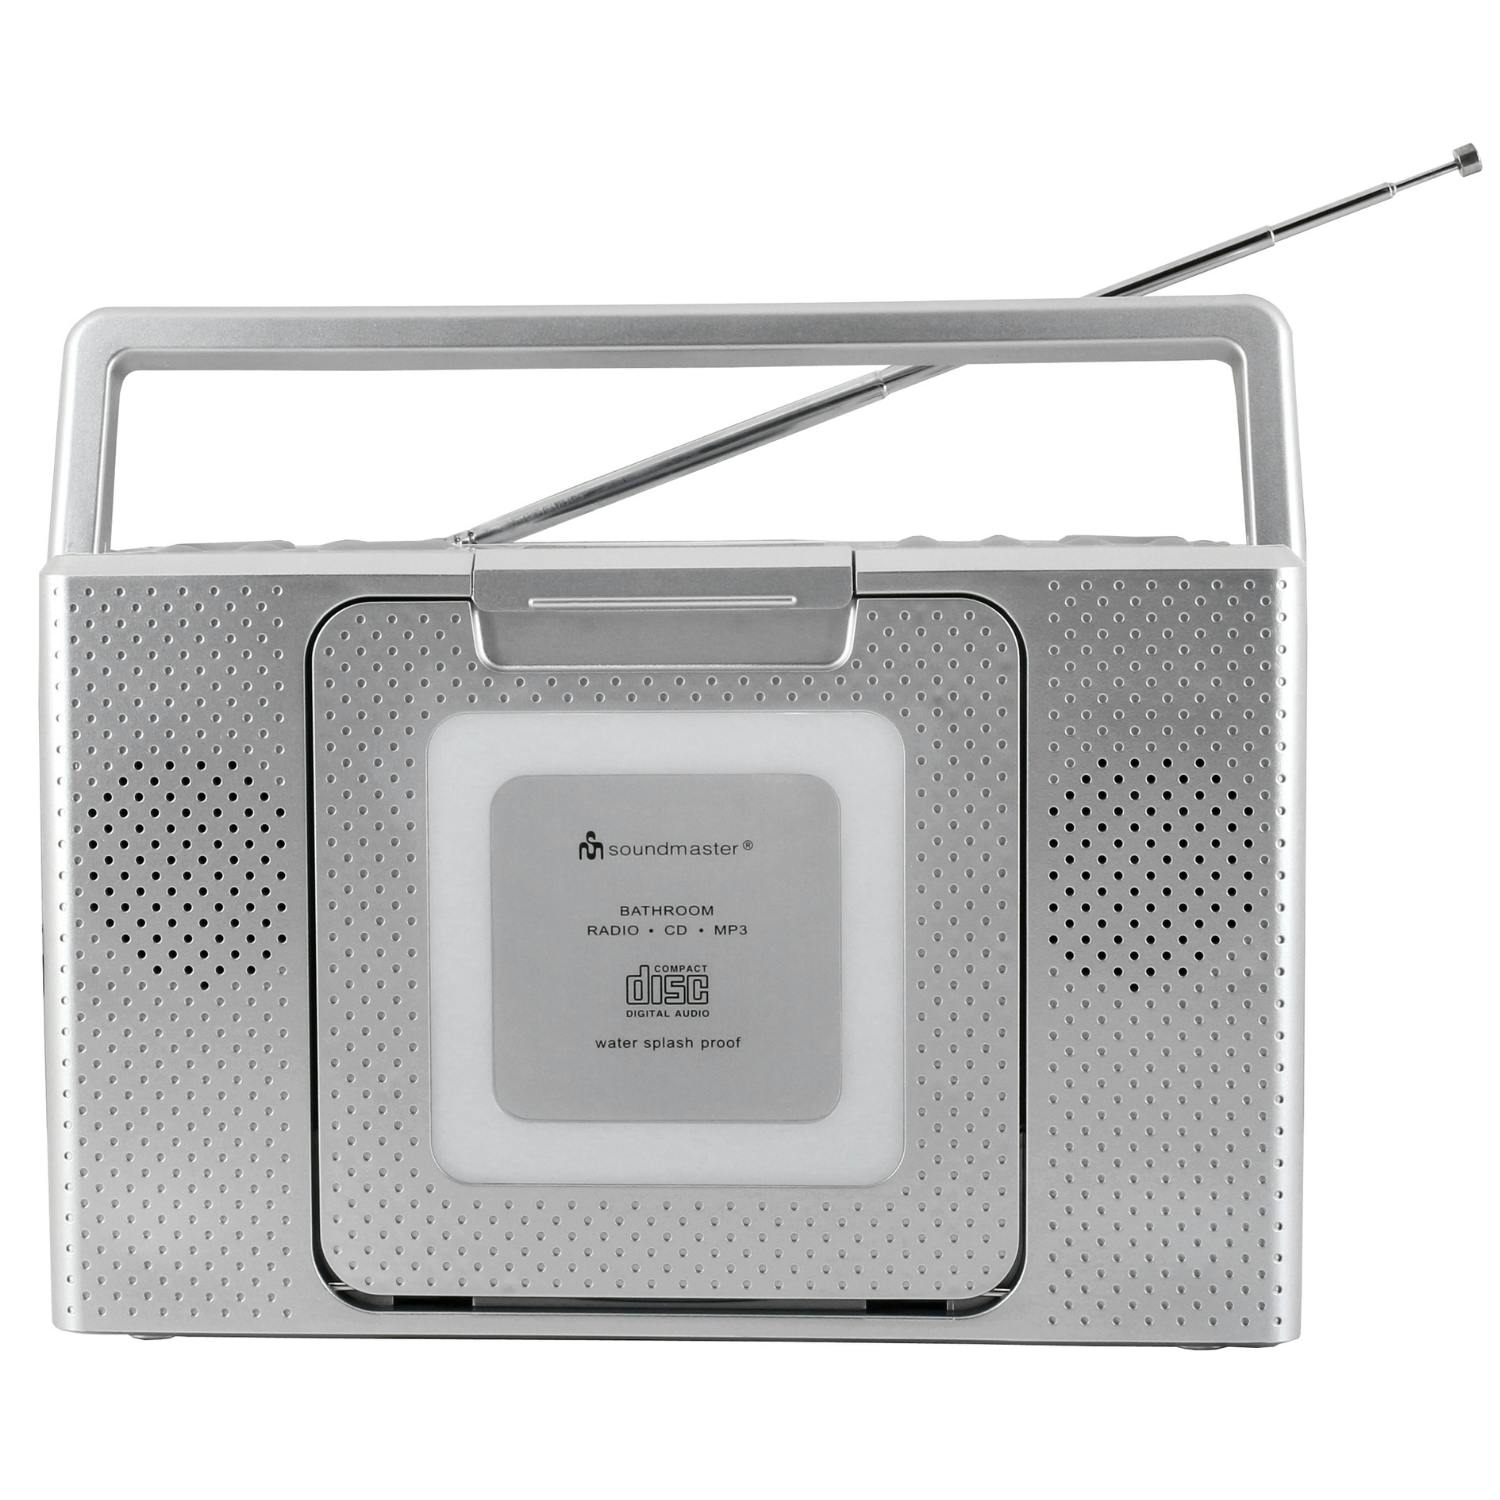 spritzwassergeschützt | CD-Player Uhr Soundmaster Küchenradio METRO Marktplatz BCD480 IPX4 Badradio